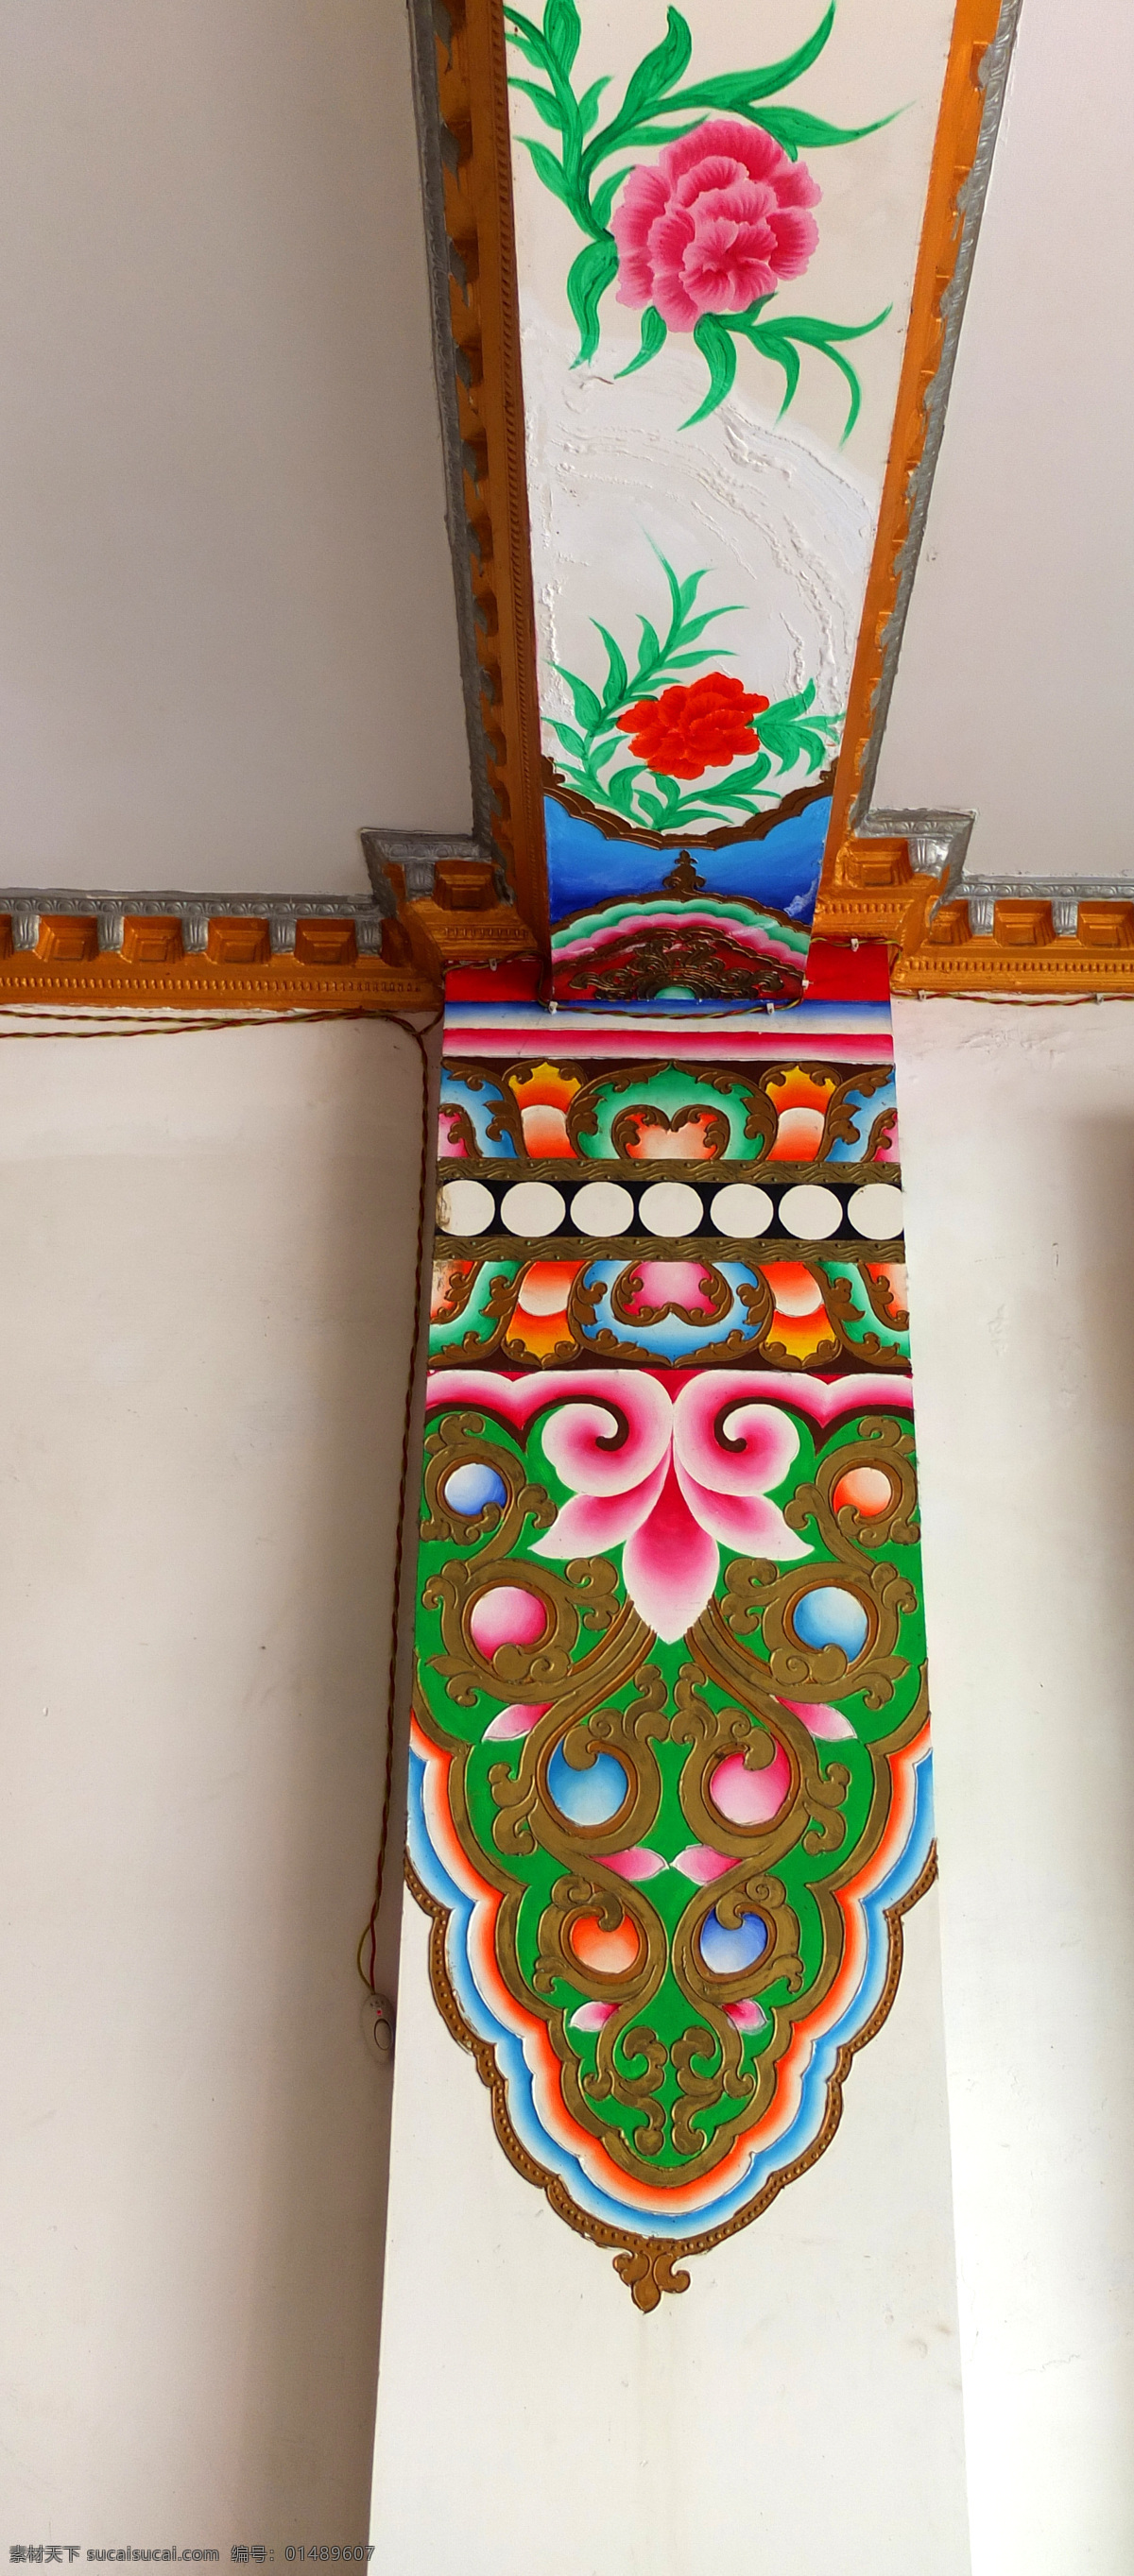 藏族纹案 墙画 藏文化 唐卡 装饰图案 藏区 国内旅游 旅游摄影